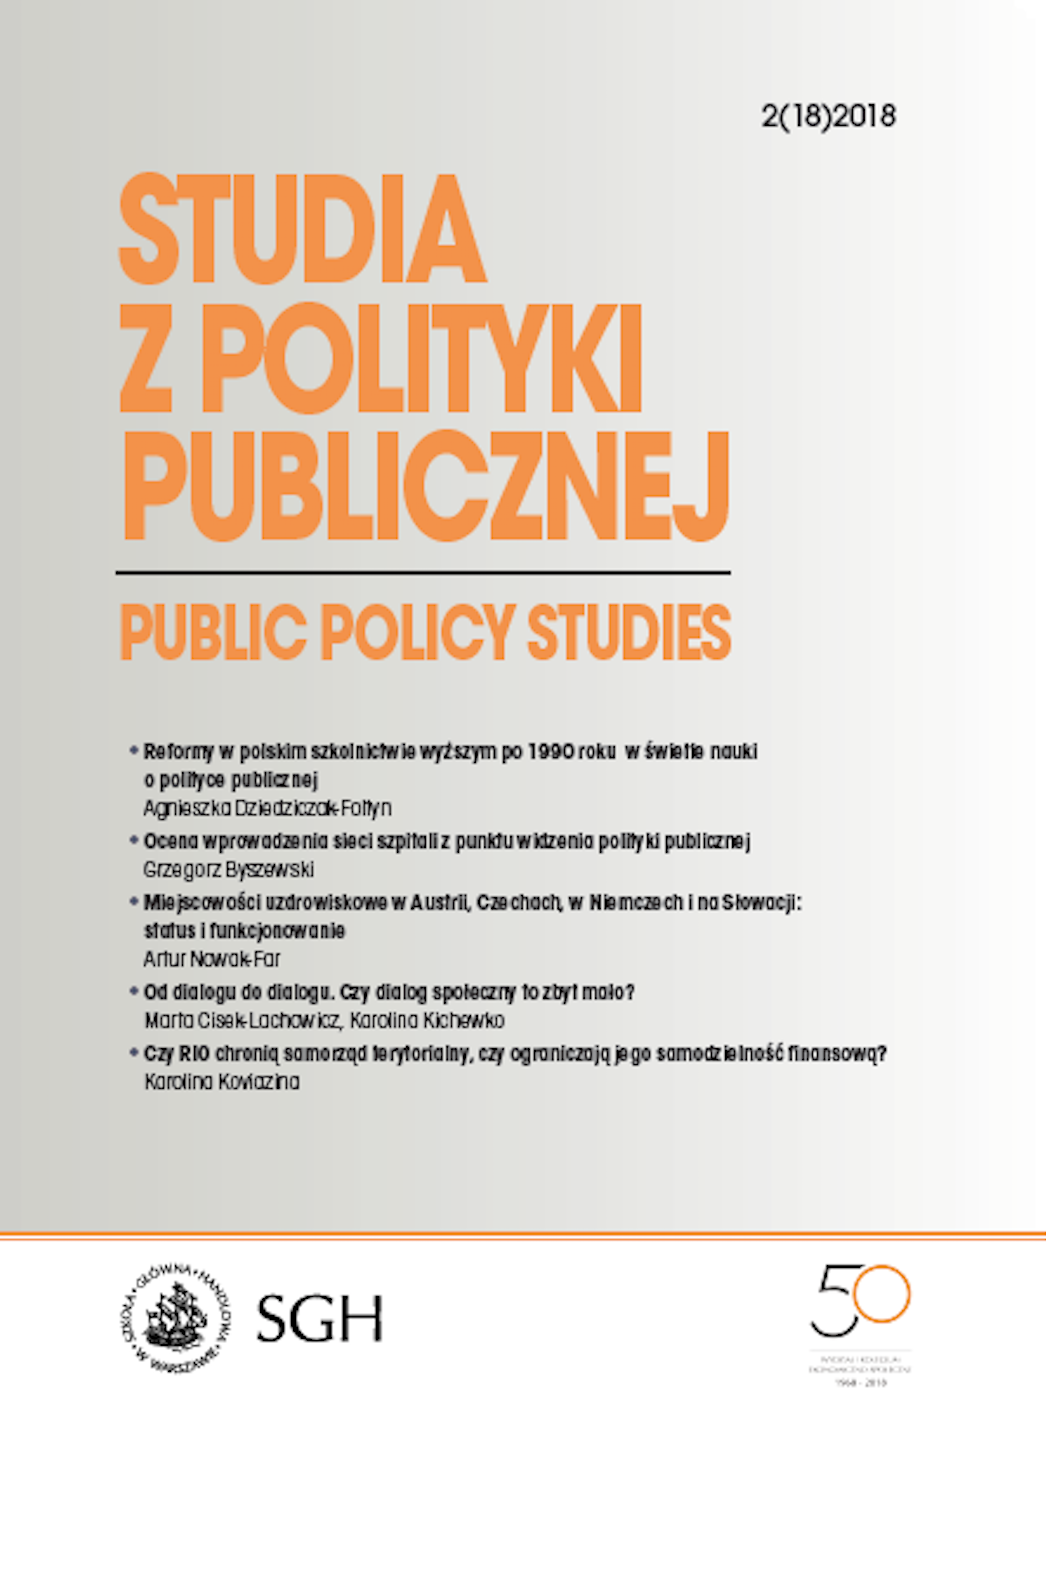 Polityka publiczna - zagadnienia i nurty teoretyczne